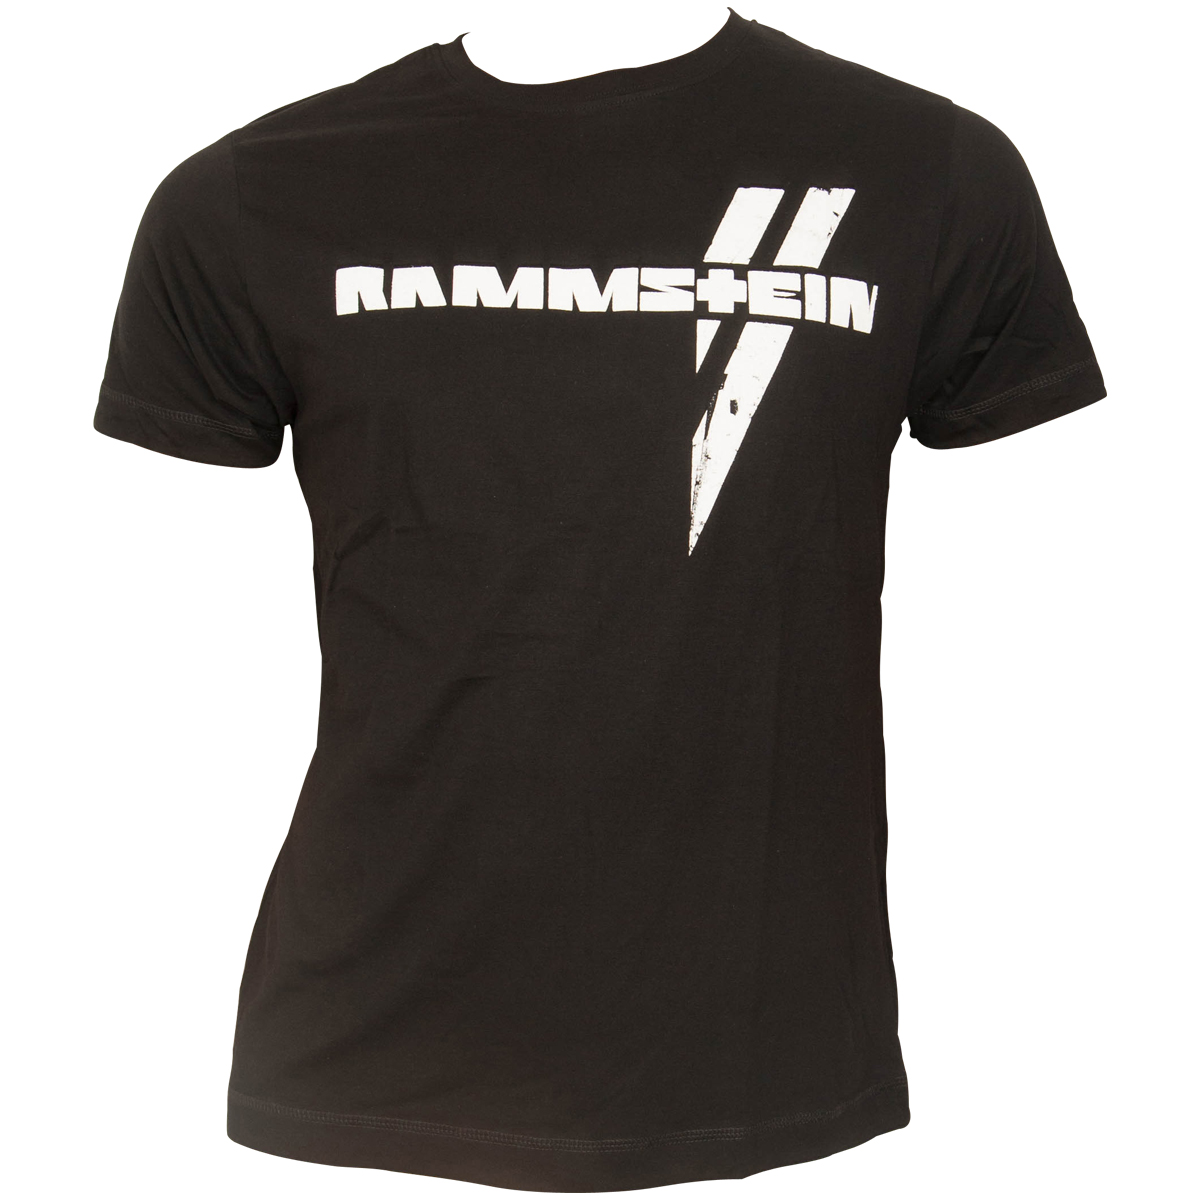 Rammstein - T-Shirt Weißer Balken - schwarz